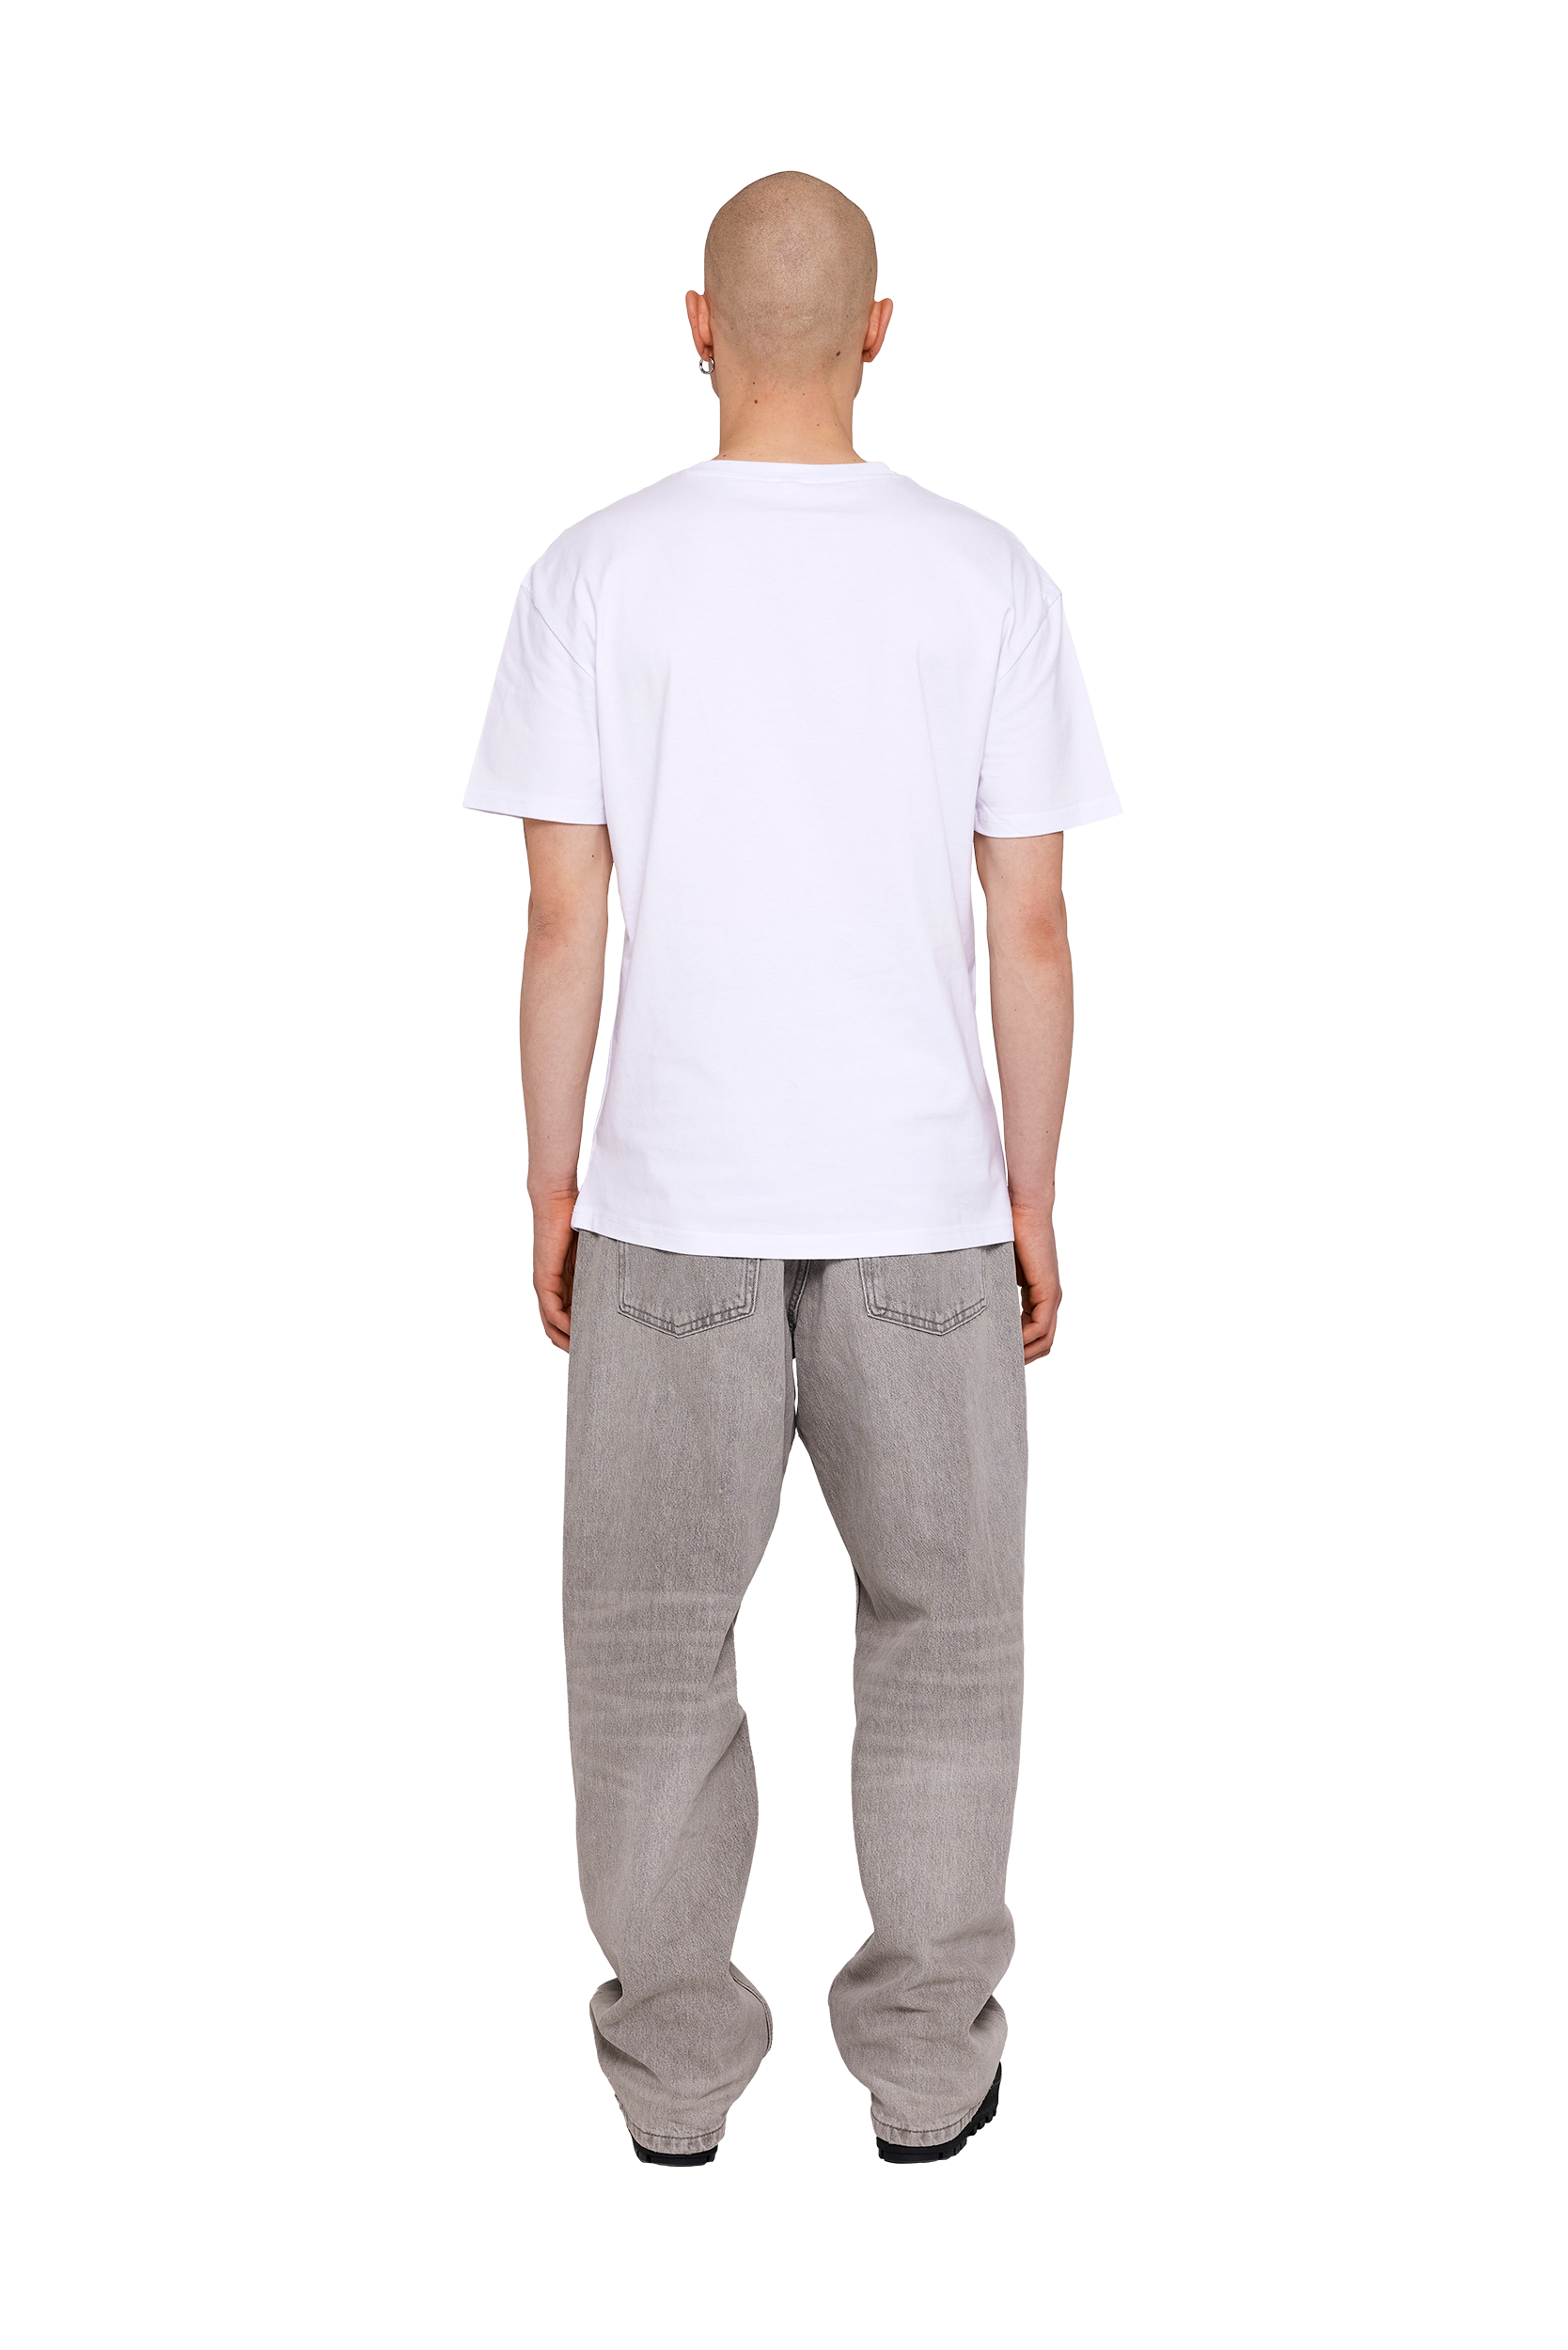 Aqua Shirt - Grey